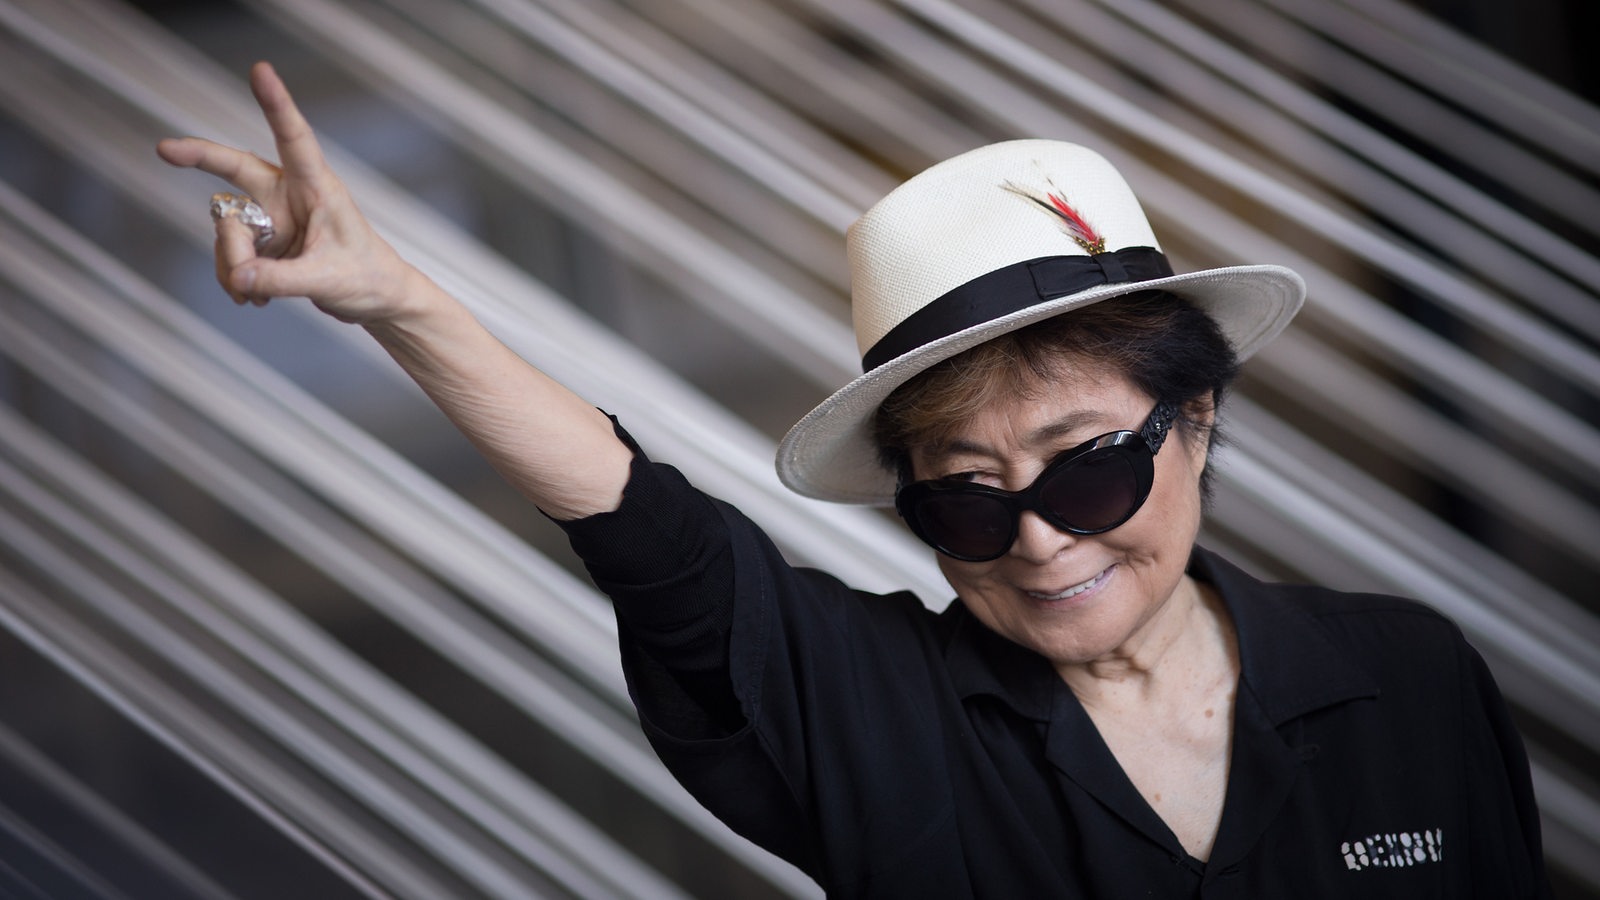 Yoko Ono: Seit ich 70 bin, ist alles viel besser geworden. - Bremen Zwei